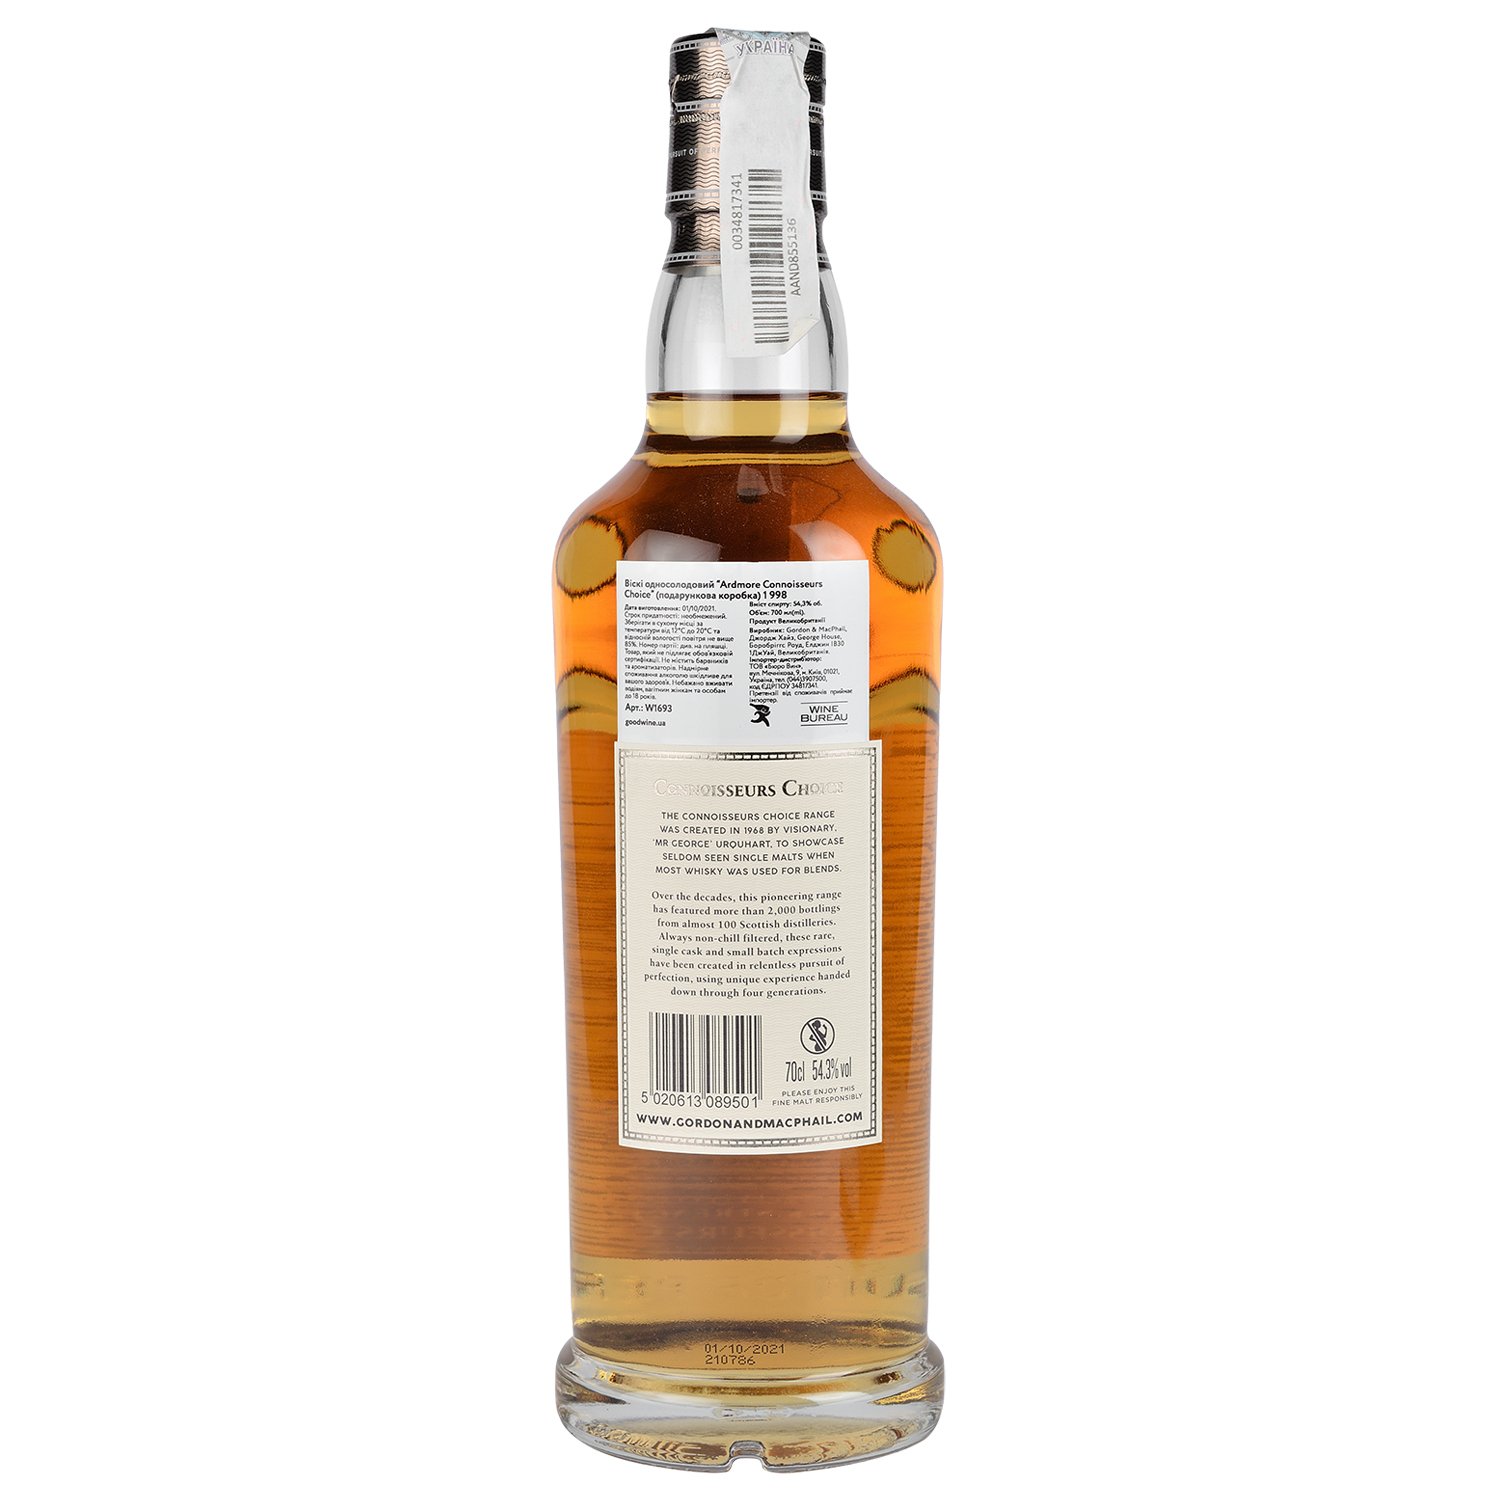 Виски Gordon&MacPhail Ardmore Connoisseurs Choice 1998 Batch 21/176 Single Malt Scotch Whisky, в подарочной упаковке, 54,3%, 0,7 л - фото 4